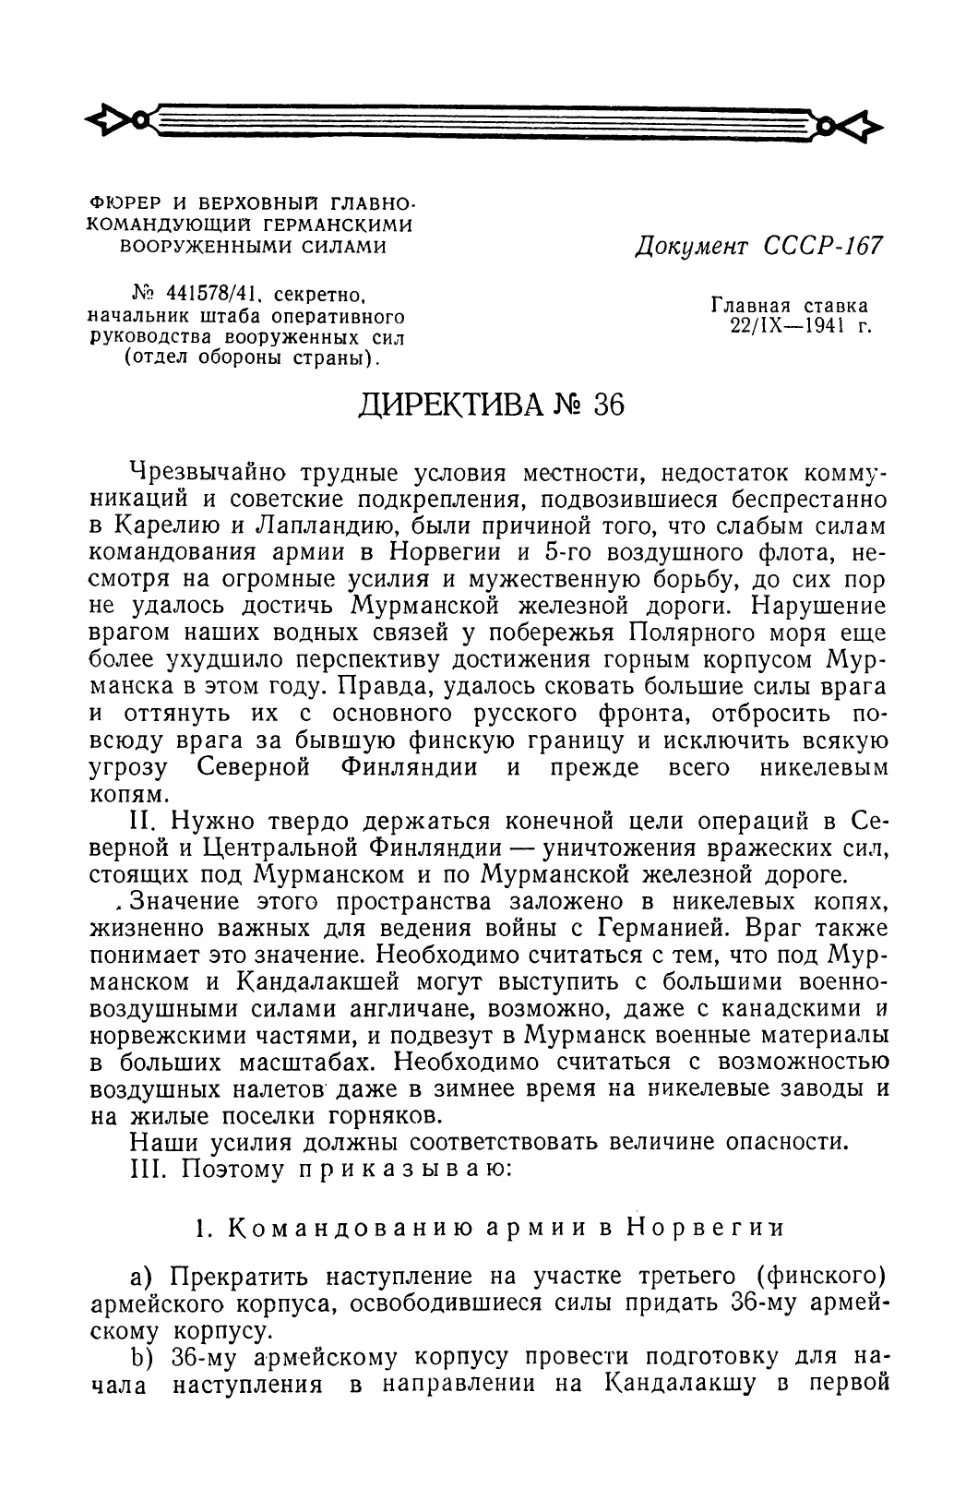 Директива Гитлера № 36 от 22 сентября 1941 г. о наступлении на на Мурманск и захвате Мурманской железной дороги